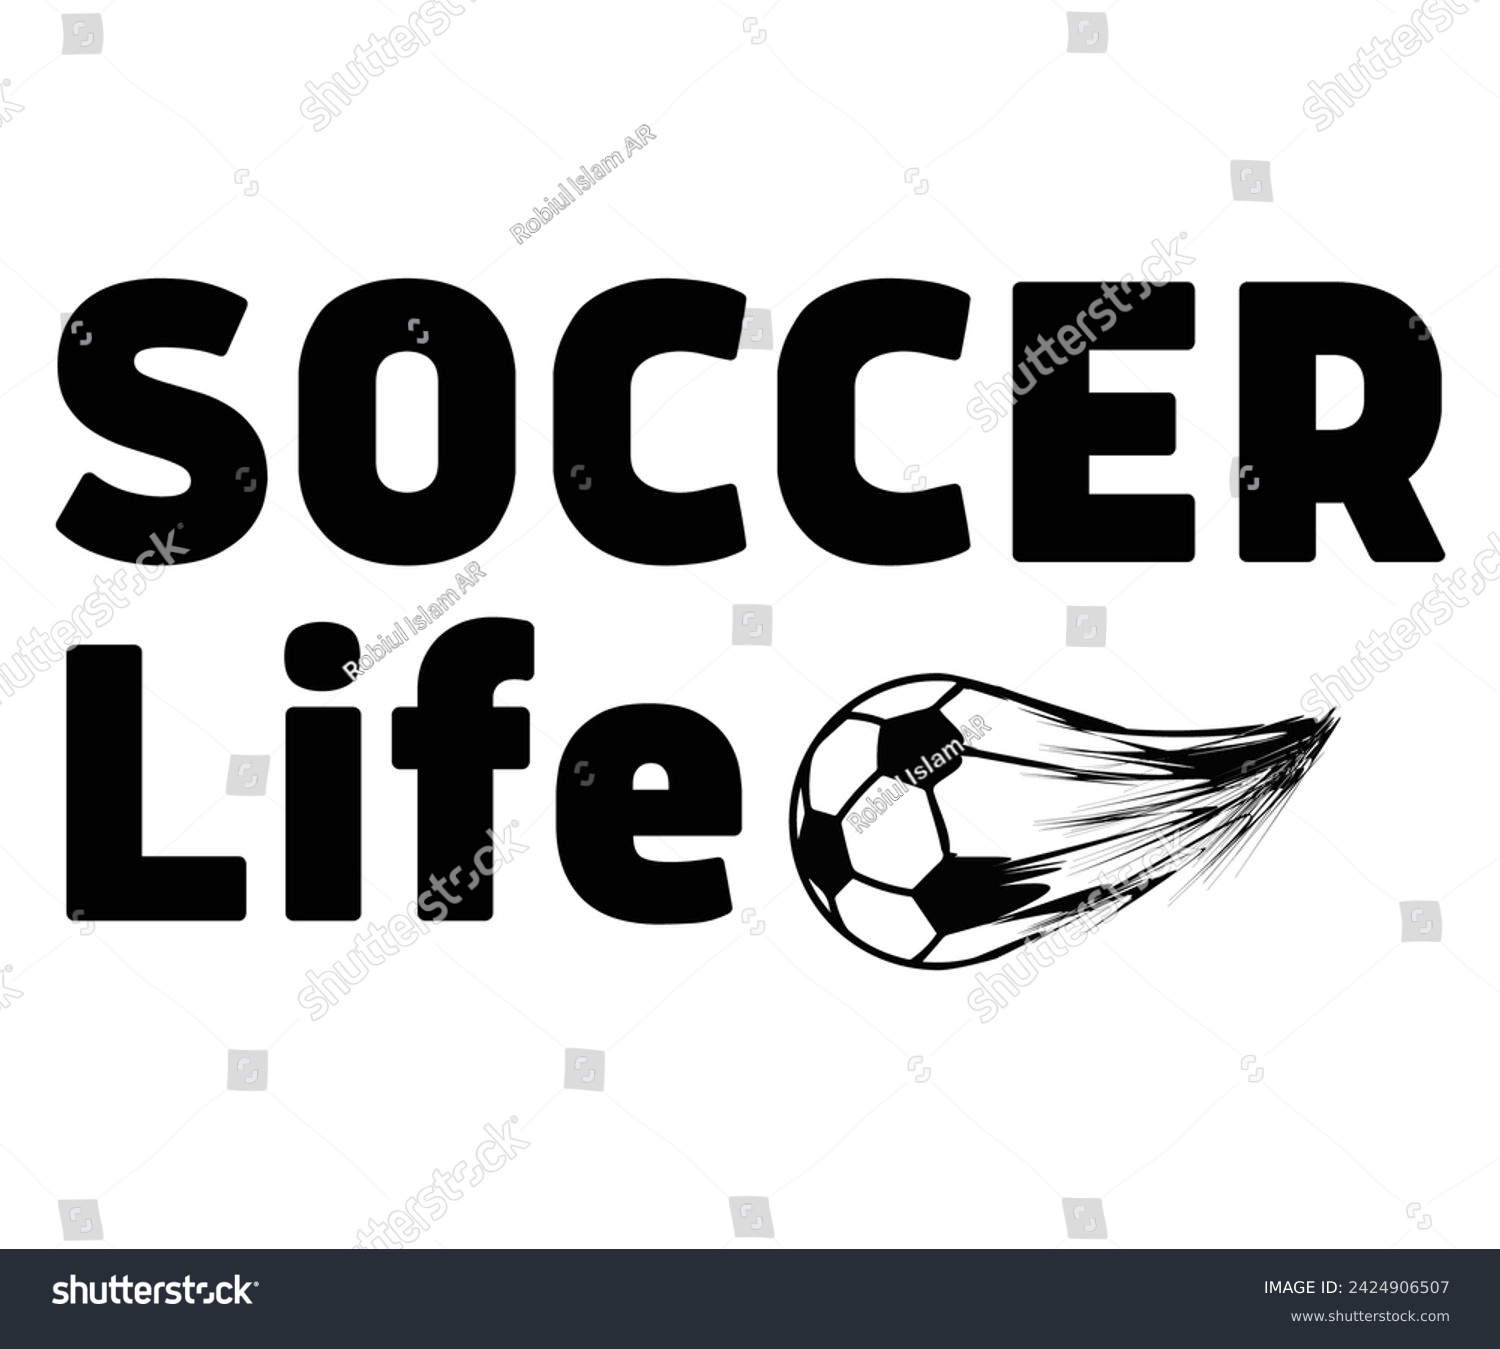 SVG of Life Svg,Soccer Day, Soccer Player Shirt, Gift For Soccer, Soccer Football, Sport Design Svg,Soccer Cut File,Soccer Ball, Soccer t-Shirt Design, European Football,  svg